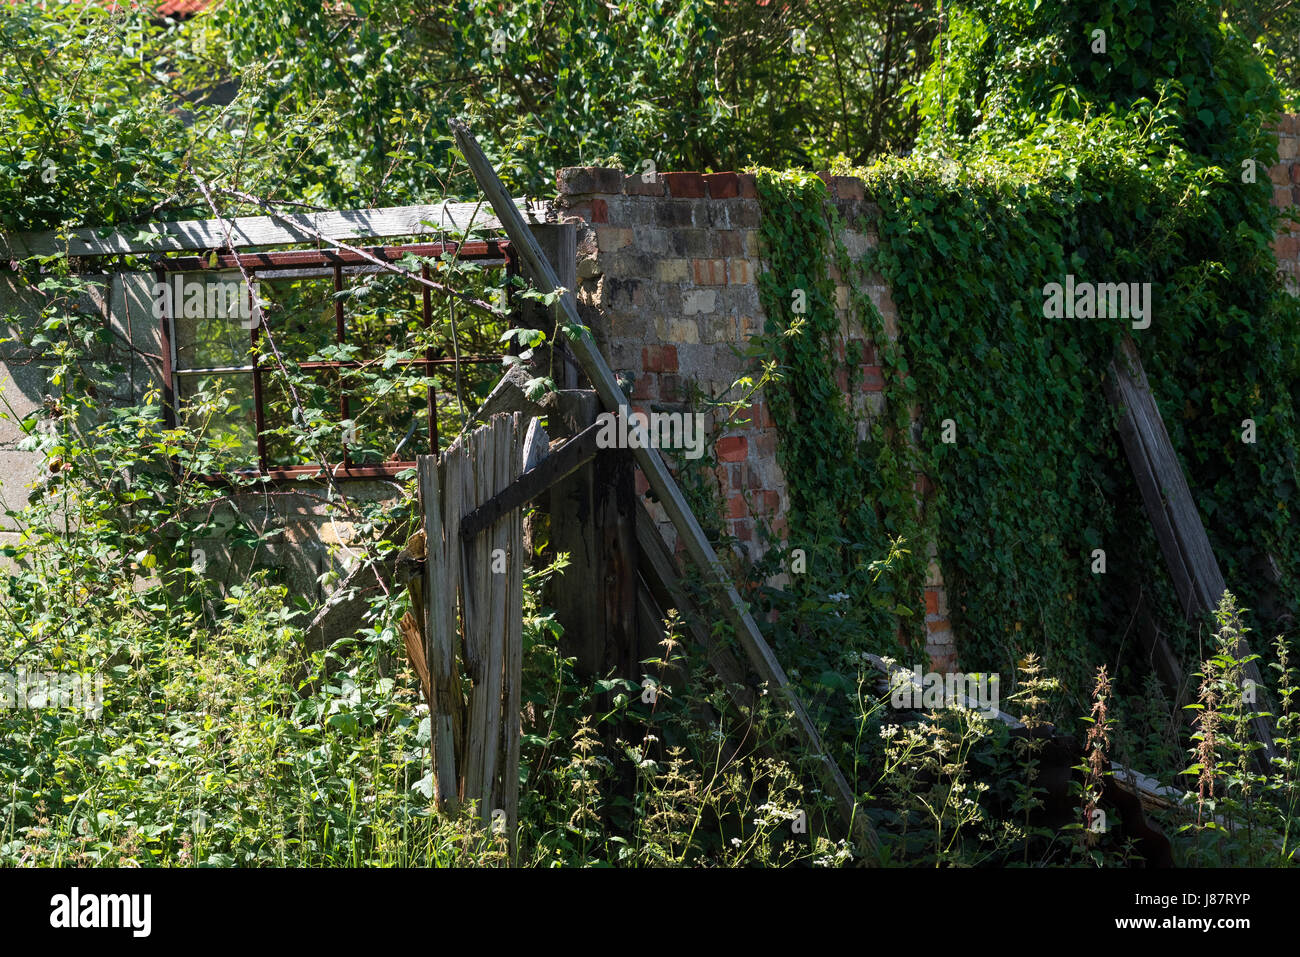 Overgrown tumbledown outhouse on farm Stock Photo